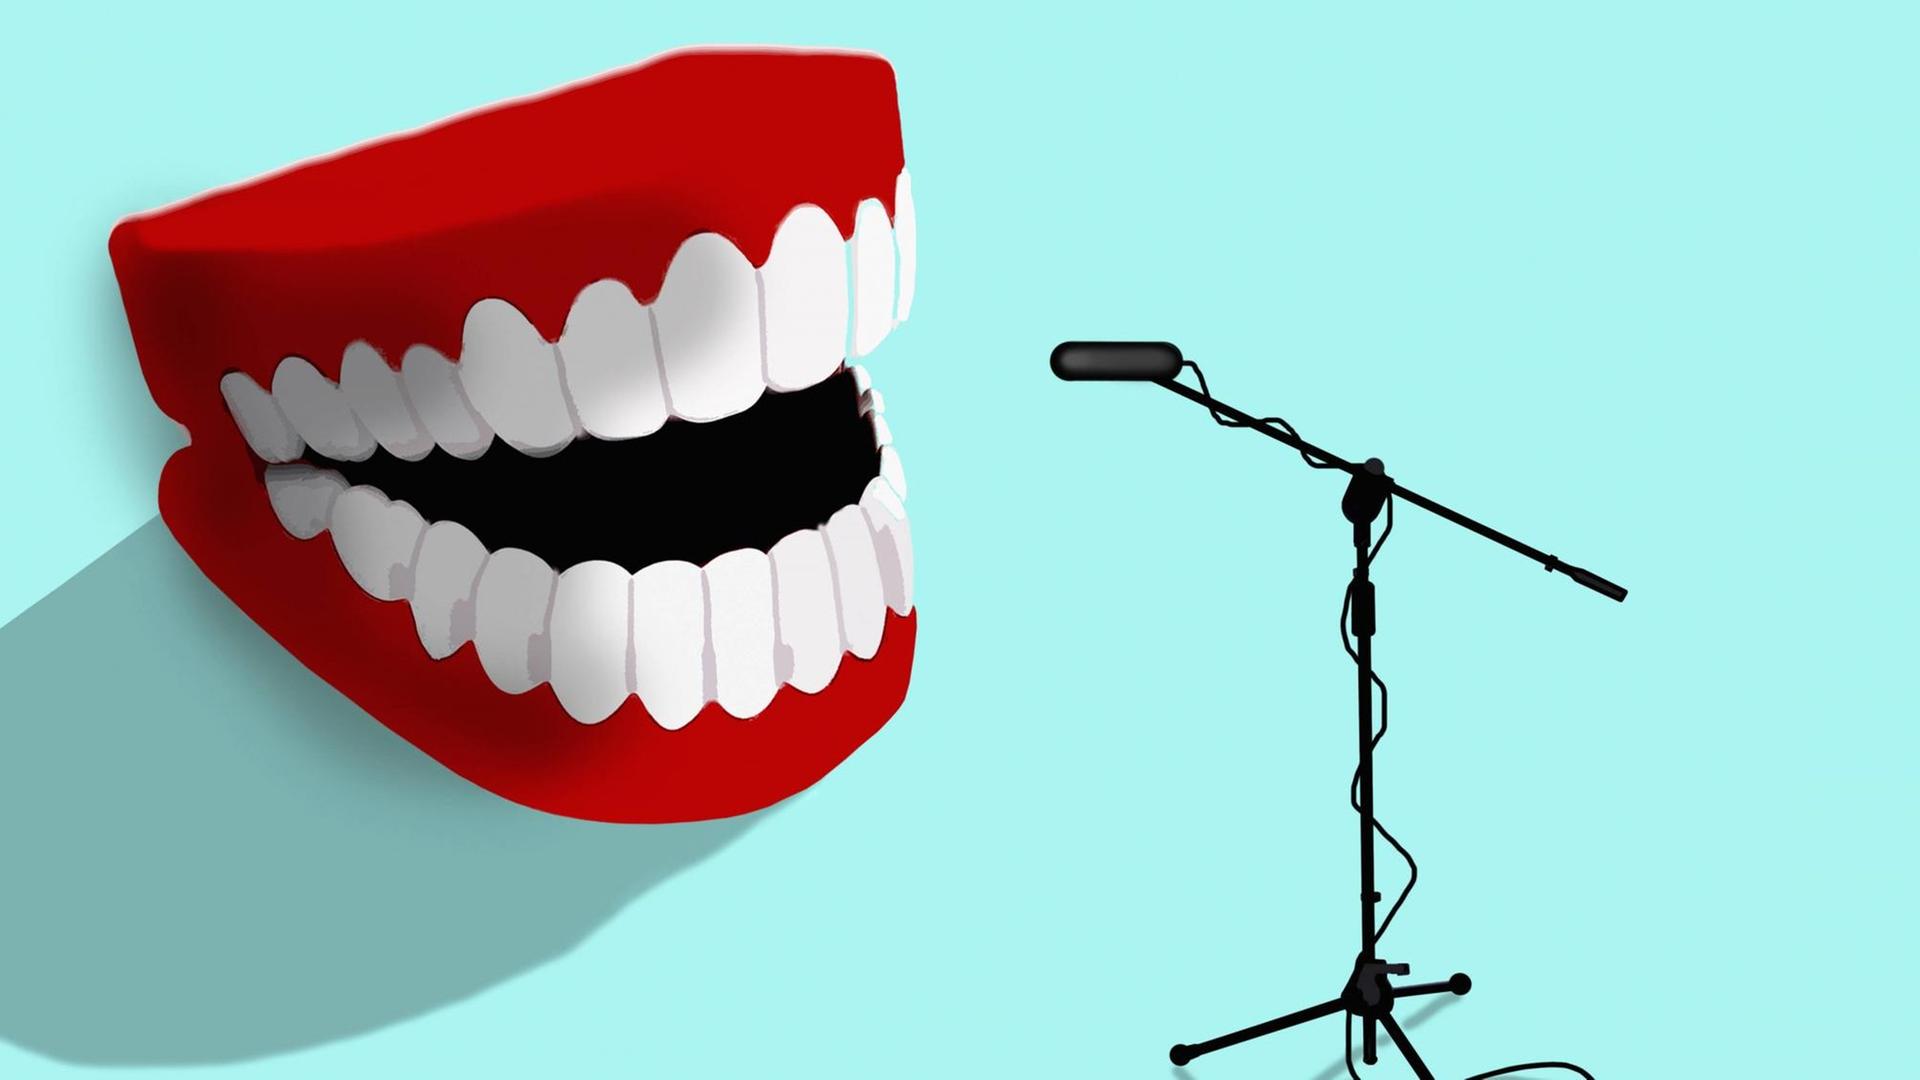 Lachende falsche Zähne sprechen in ein Mikrofon